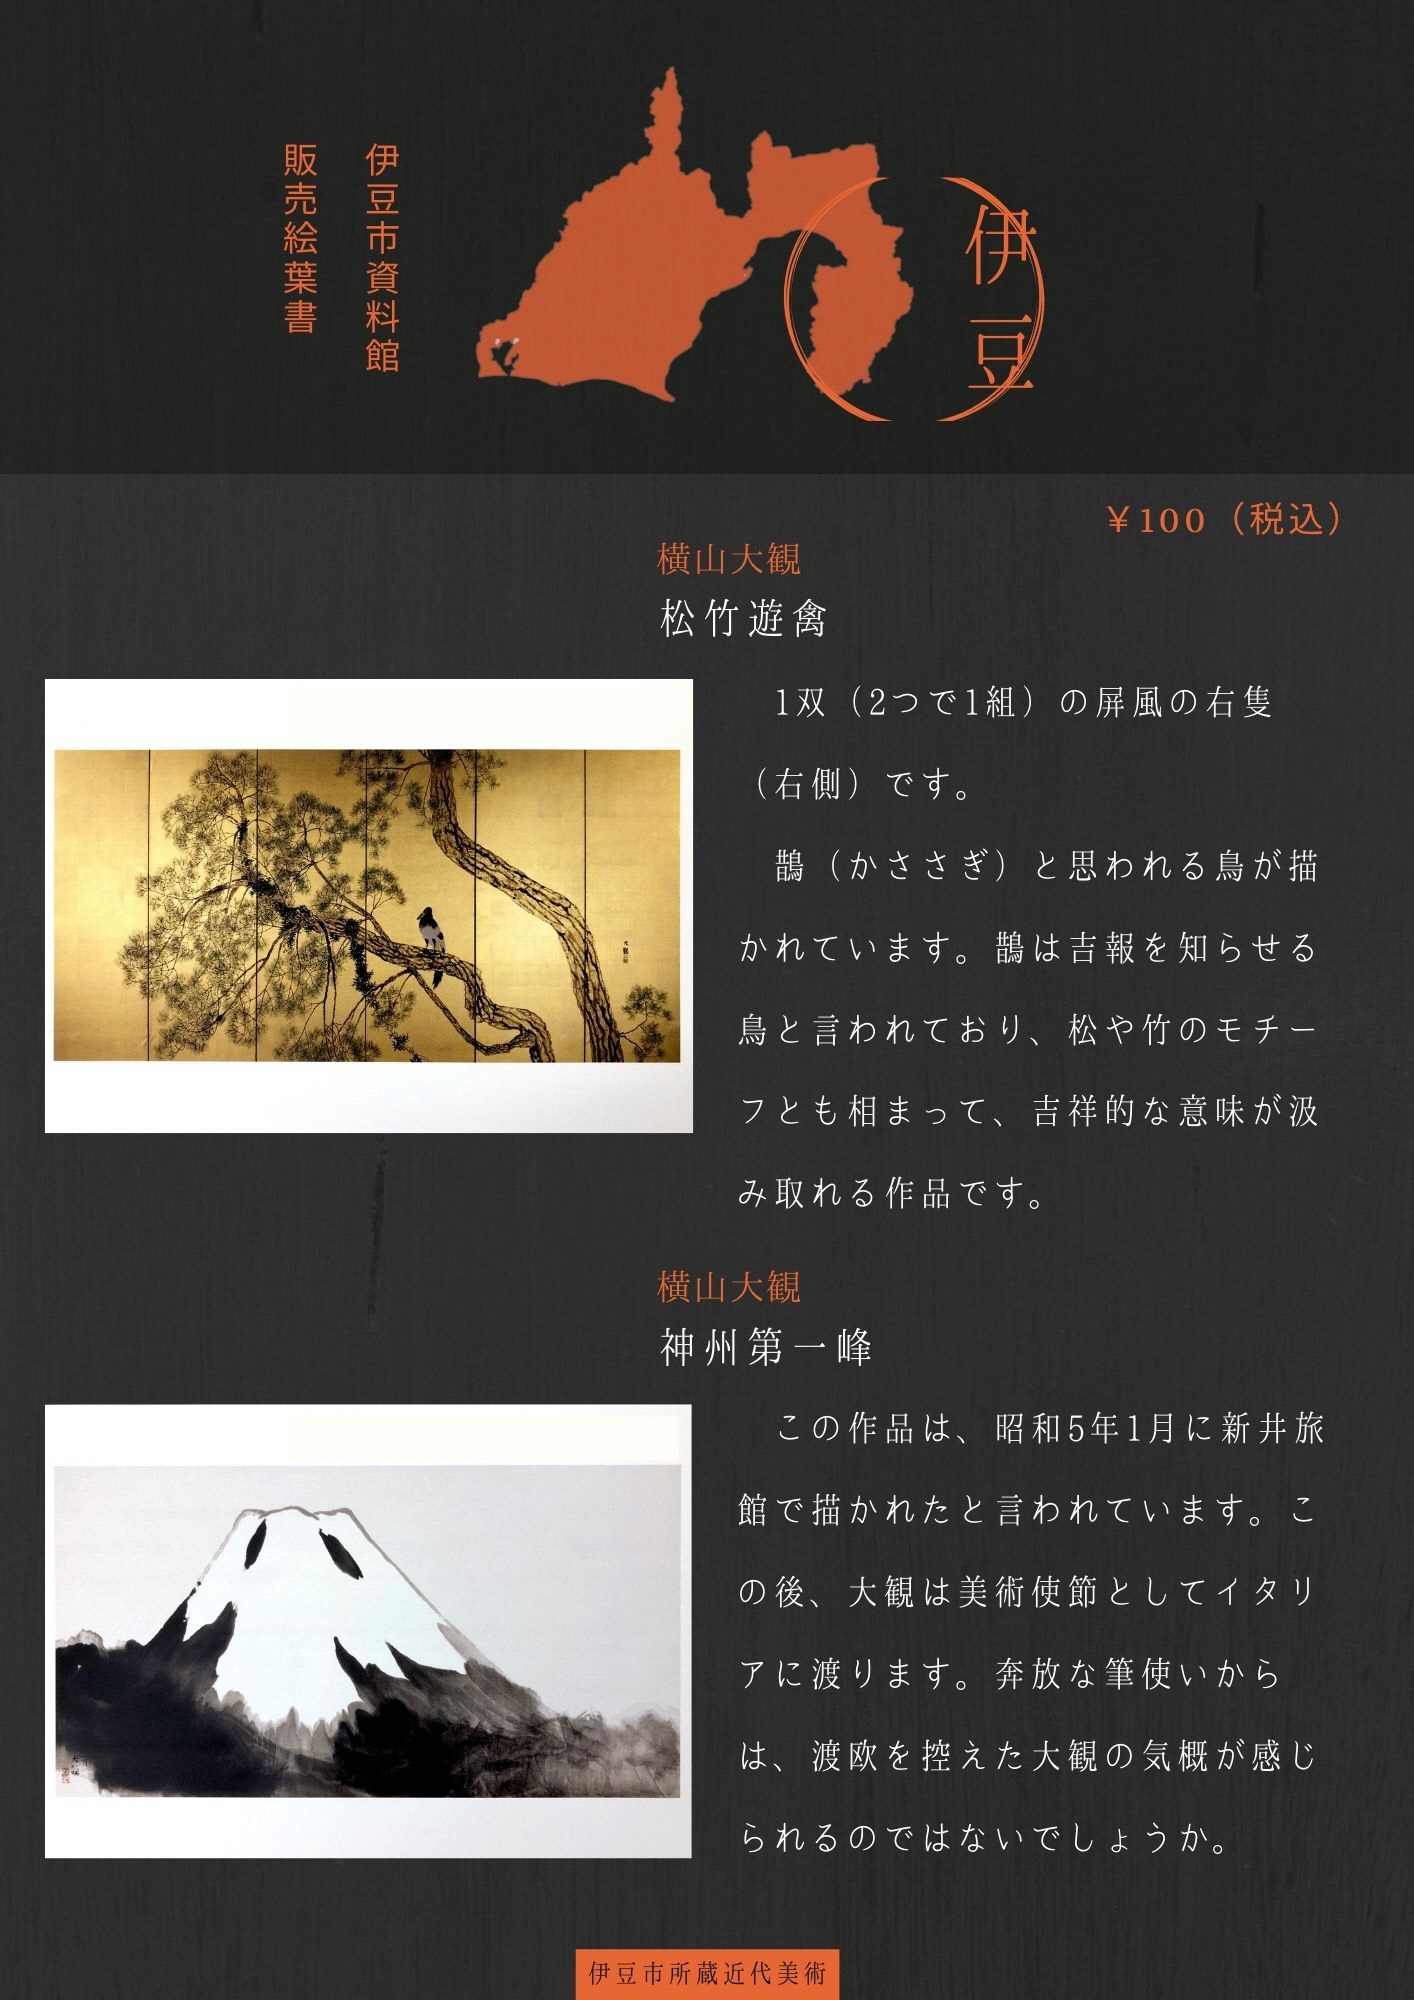 松竹遊禽・神州第一峰のポストカードを説明するポスター